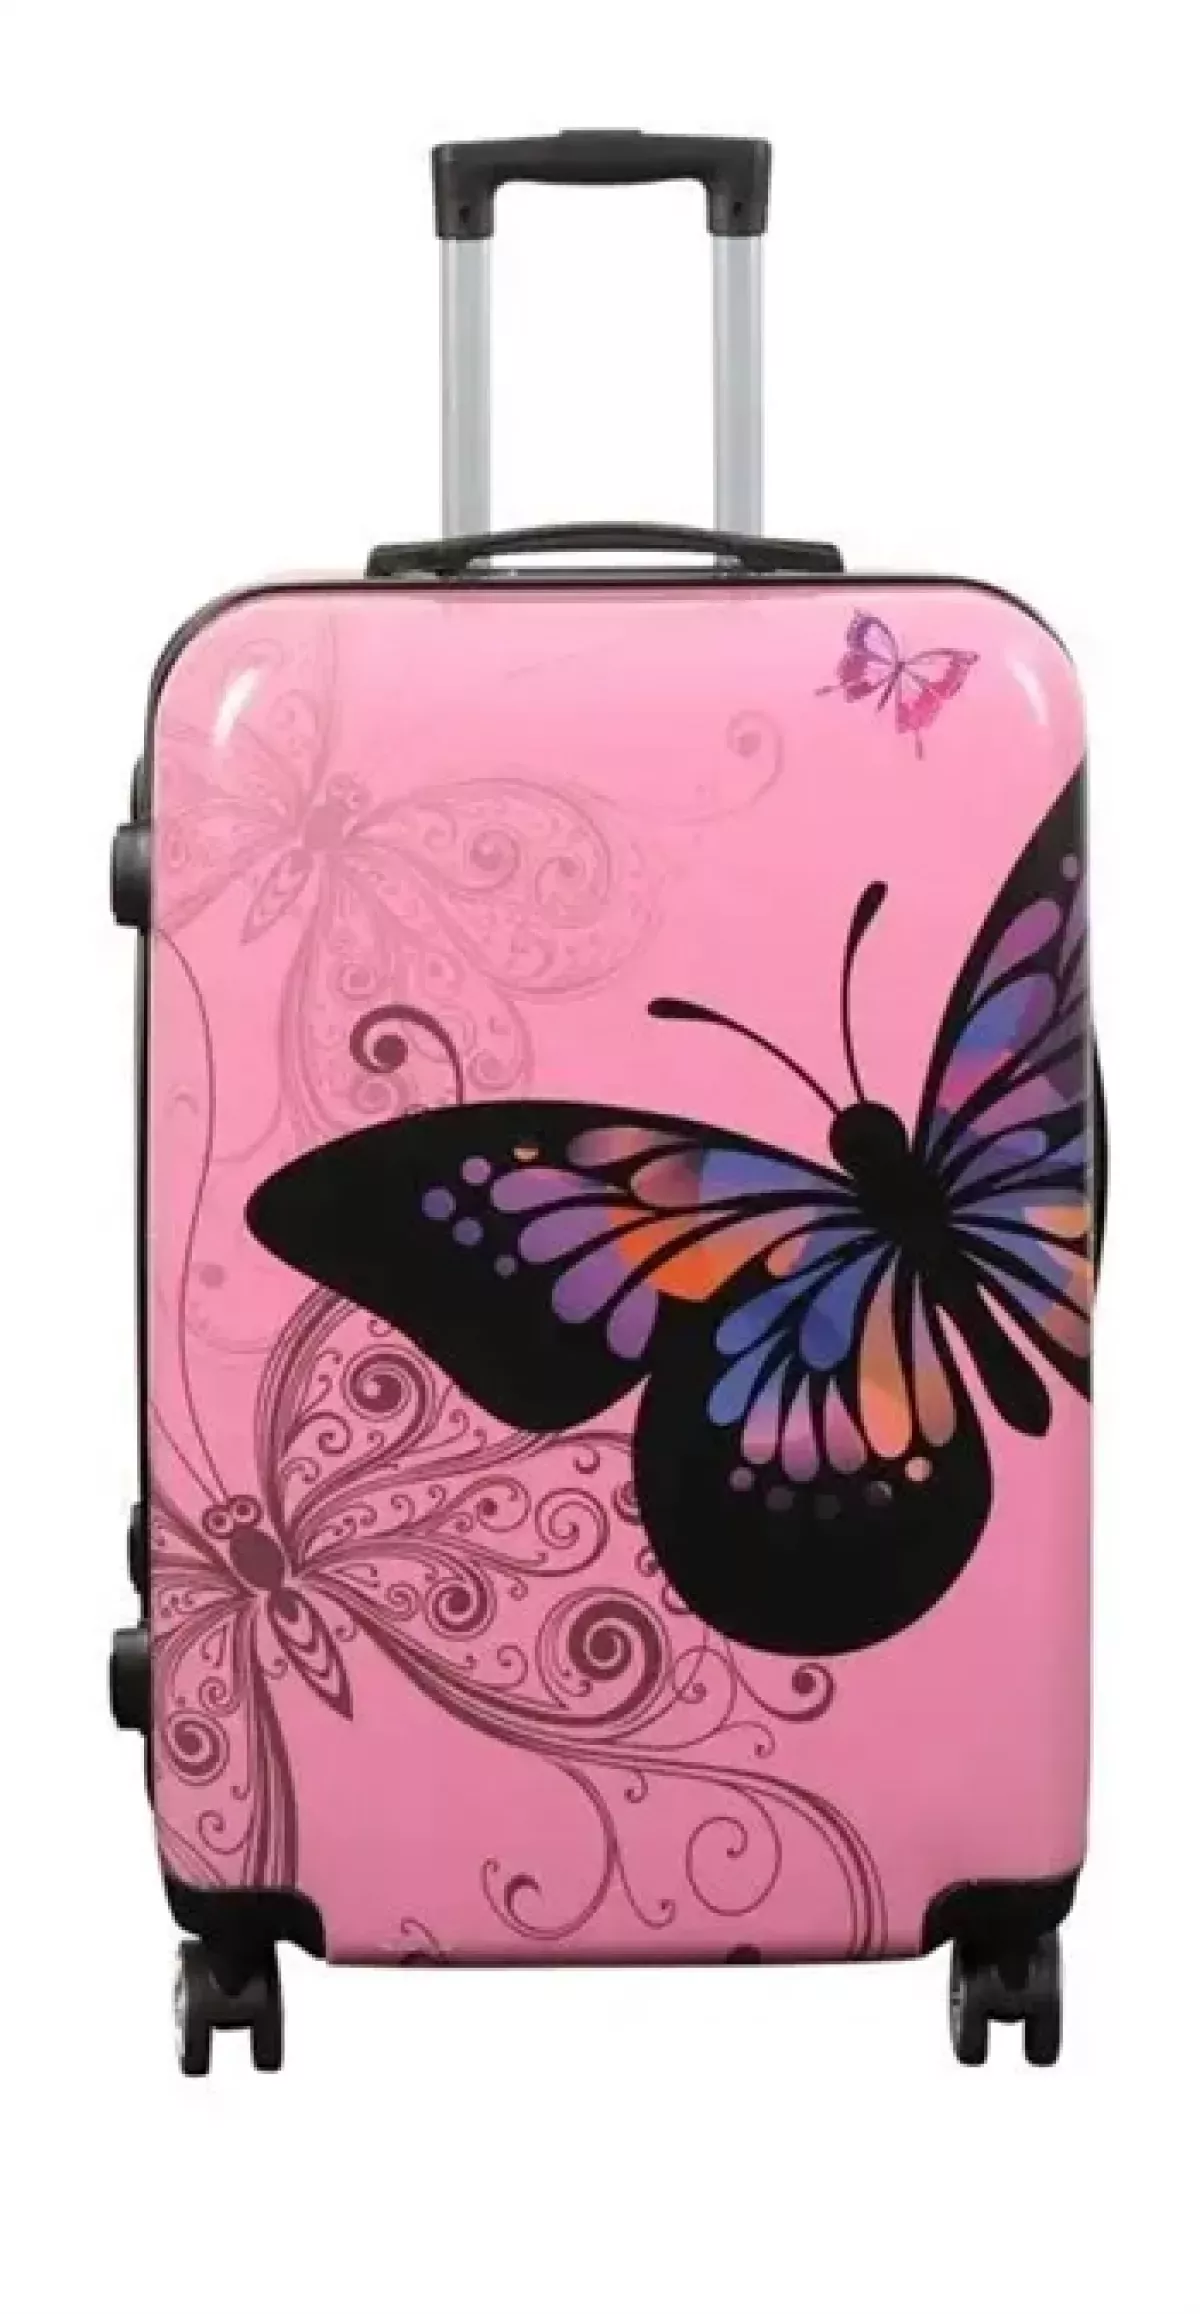 #1 - Kuffert - Hardcase kuffert - Str. Medium - Kuffert med motiv - Sommerfugl lyserød - Eksklusiv letvægt rejsekuffert